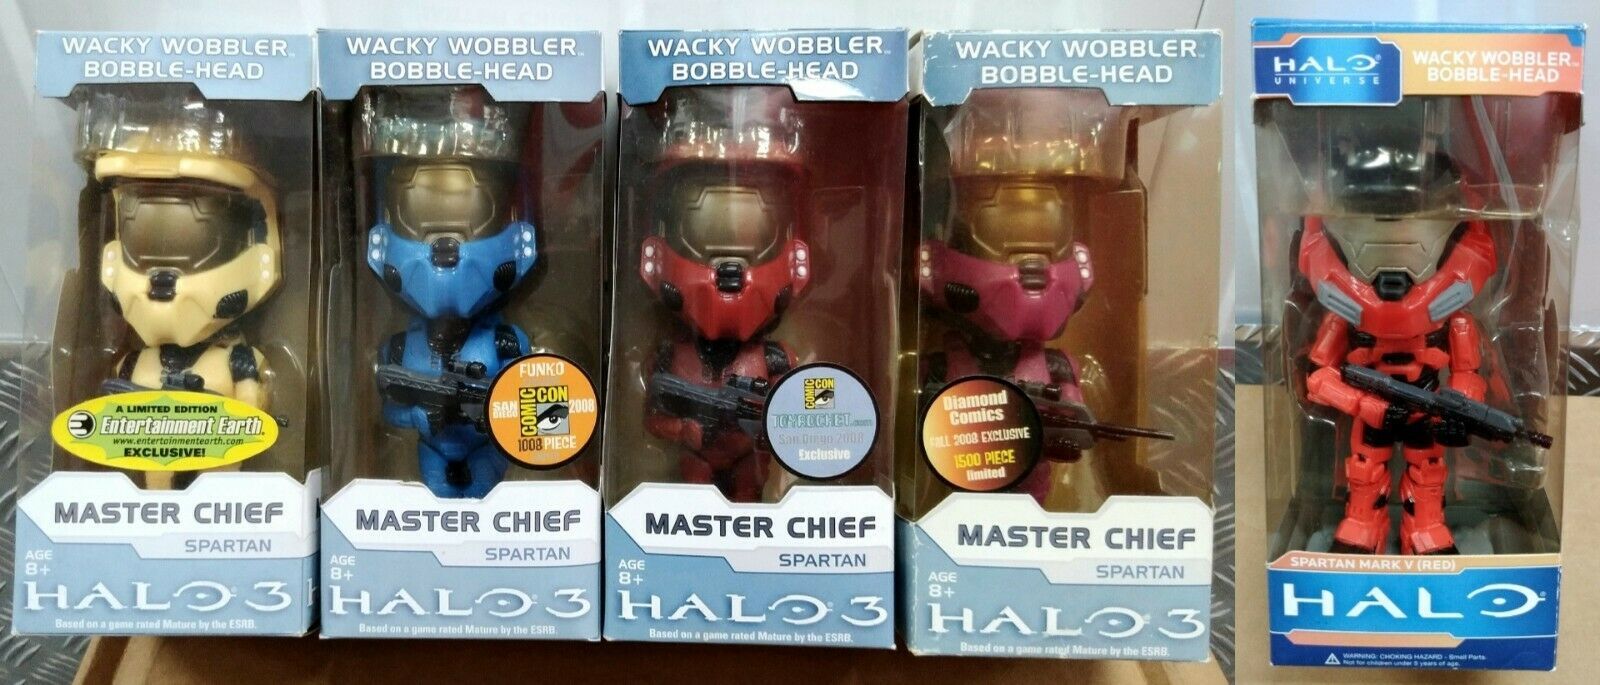 FUNKO Wacky Wobbler: Halo 3 Master Chief x 4, Spartan Mark V (Set of 5) - $295.00